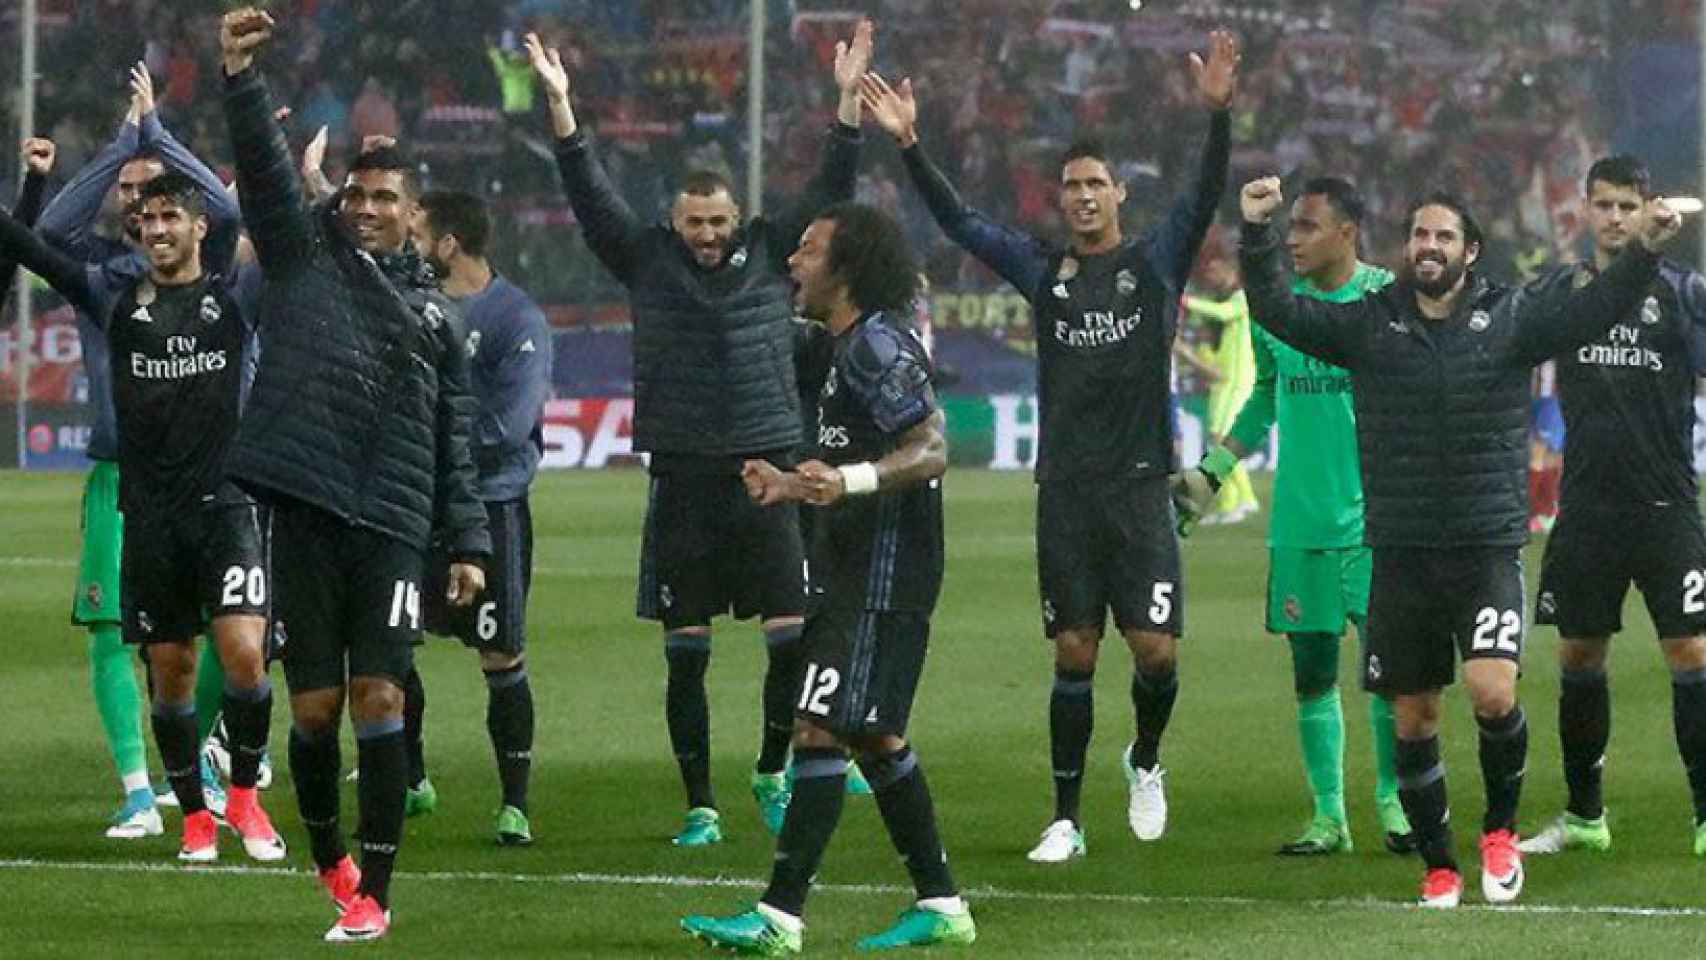 El Madrid, eufórico tras su pase a la final